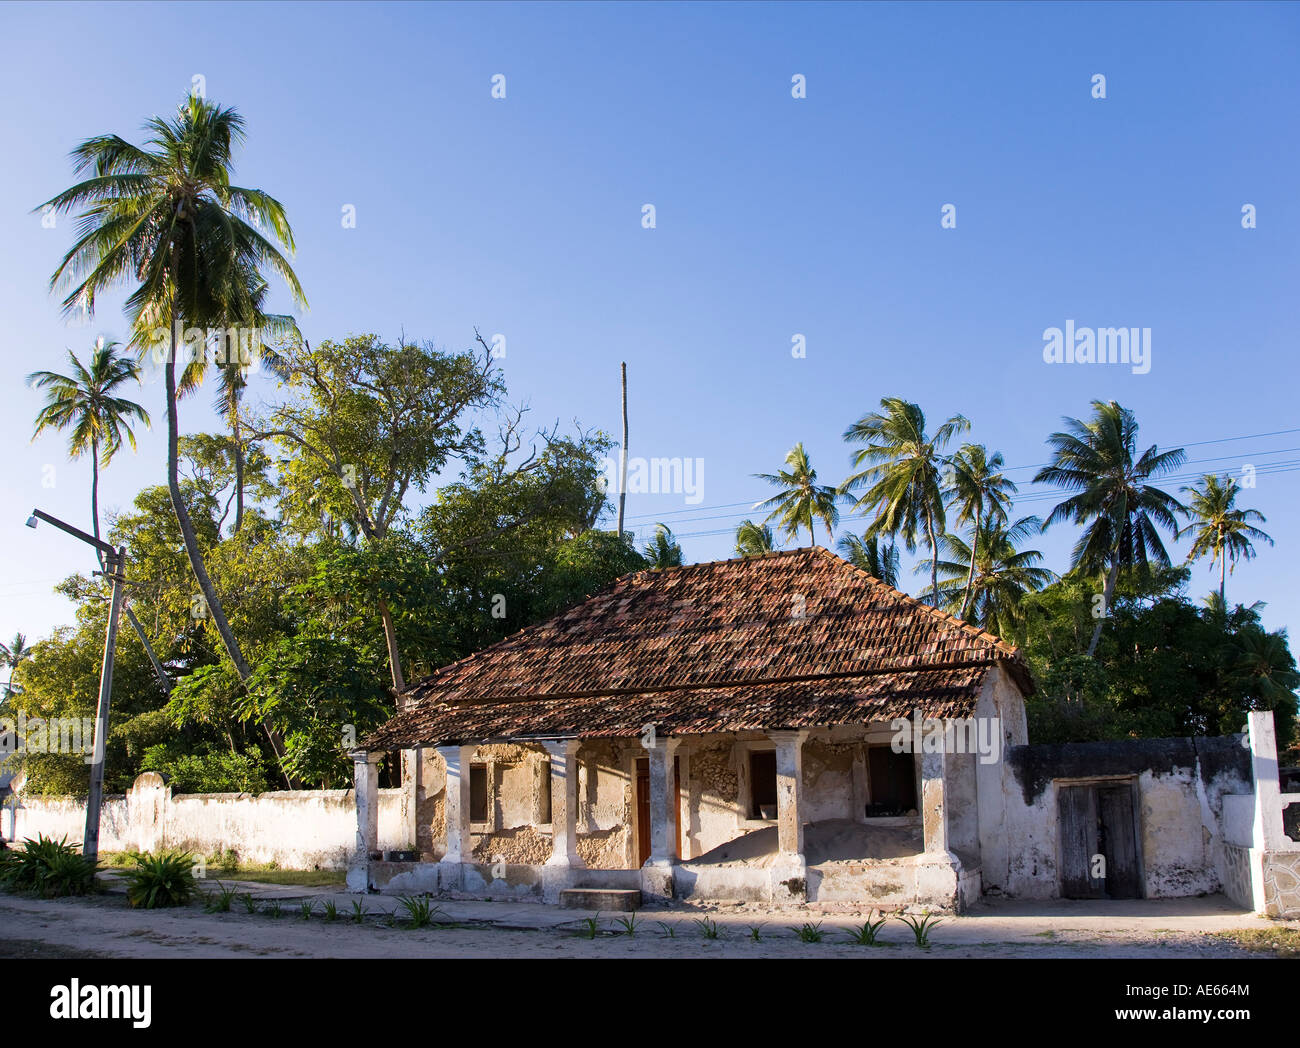 Villas coloniales en ruine sur l'île d'Ibo partie de l'archipel des Quirimbas, au Mozambique Banque D'Images